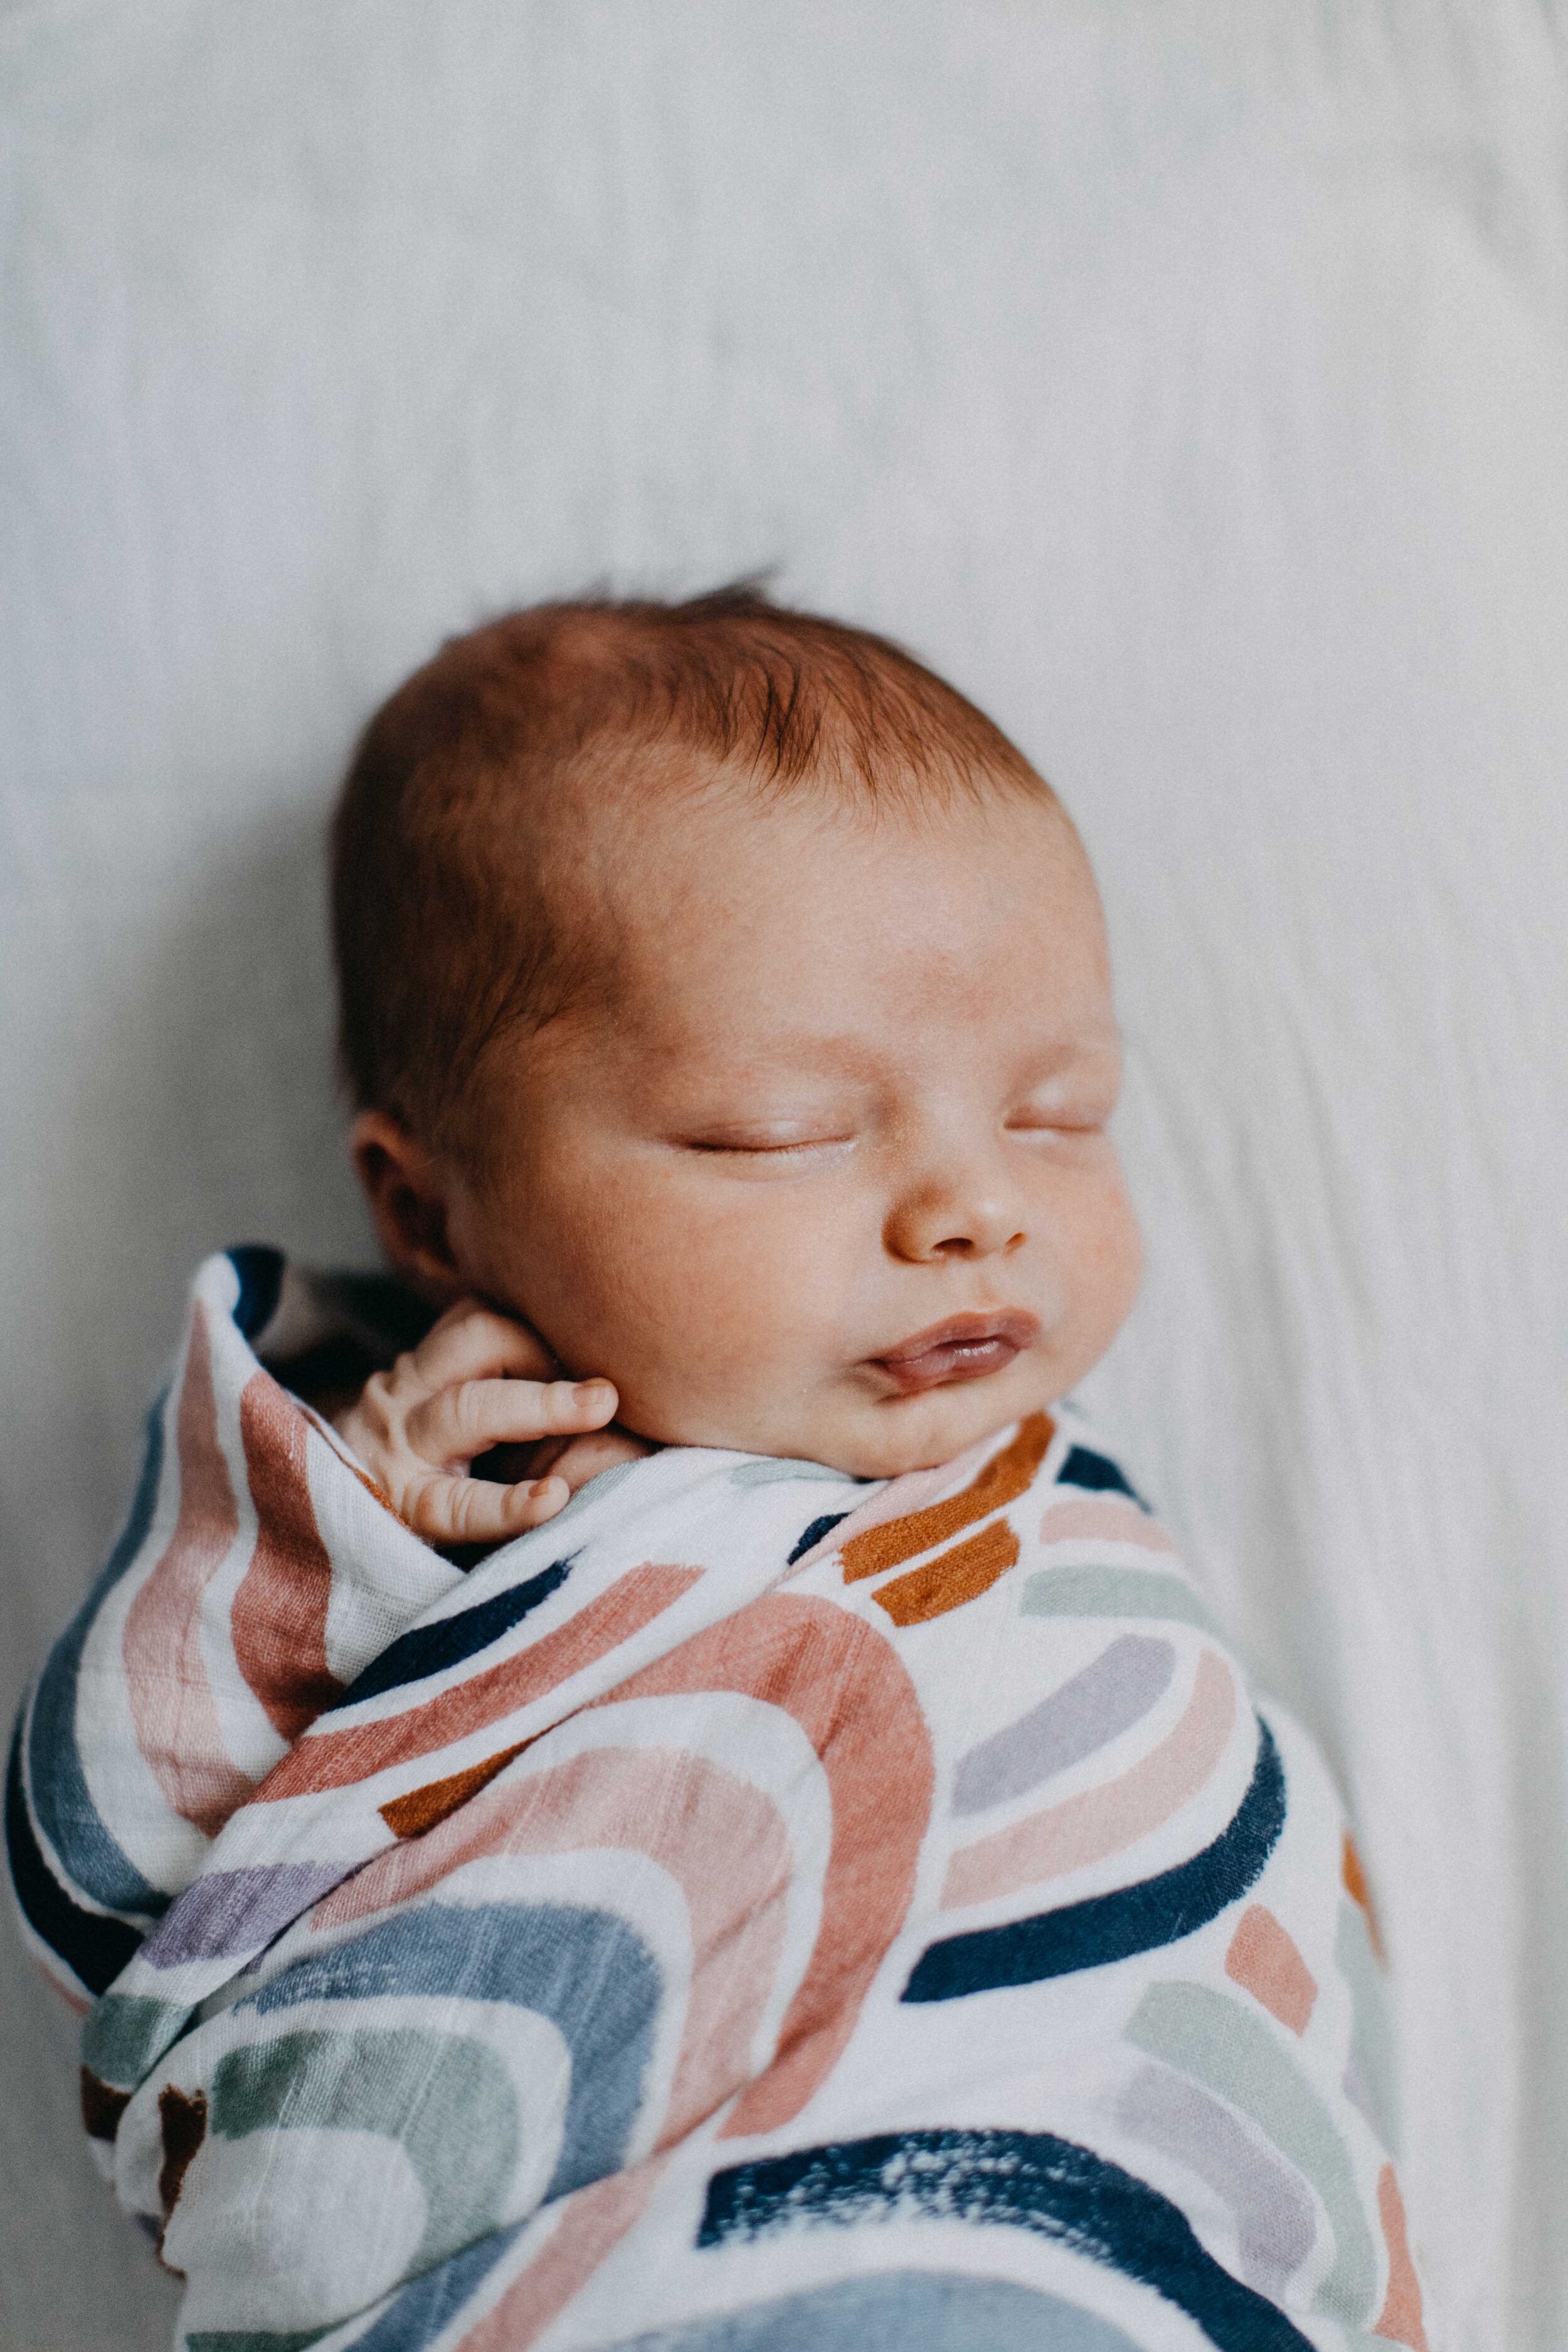 camden-newborn-photographer-lucas-brown-48.jpg